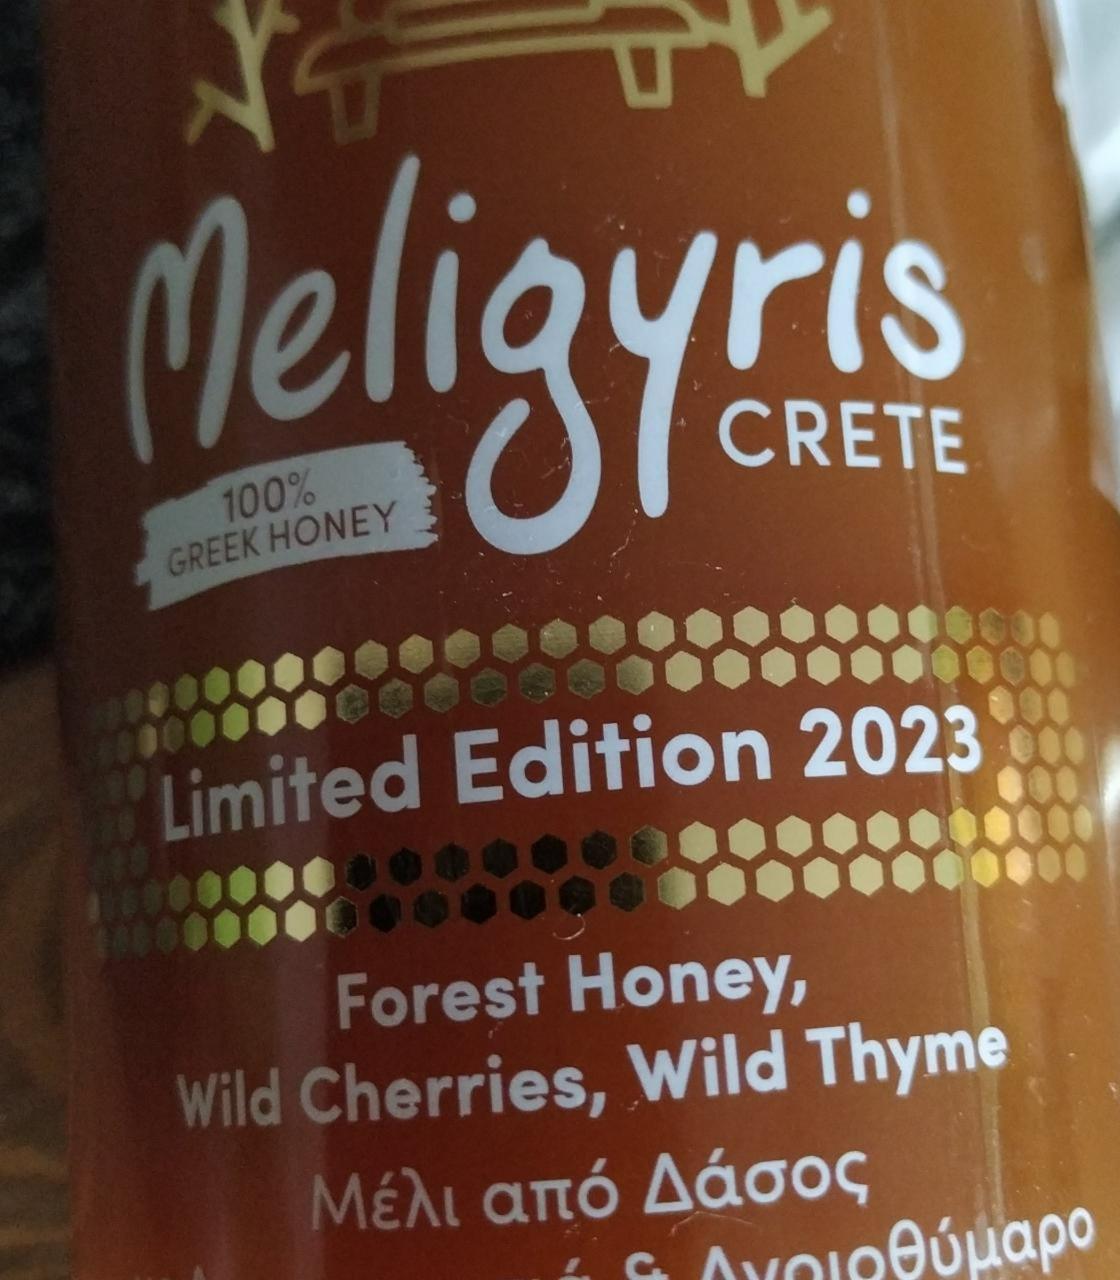 Fotografie - Forest Honey, Wild Cherries, Wild Thyme Meligyris crete